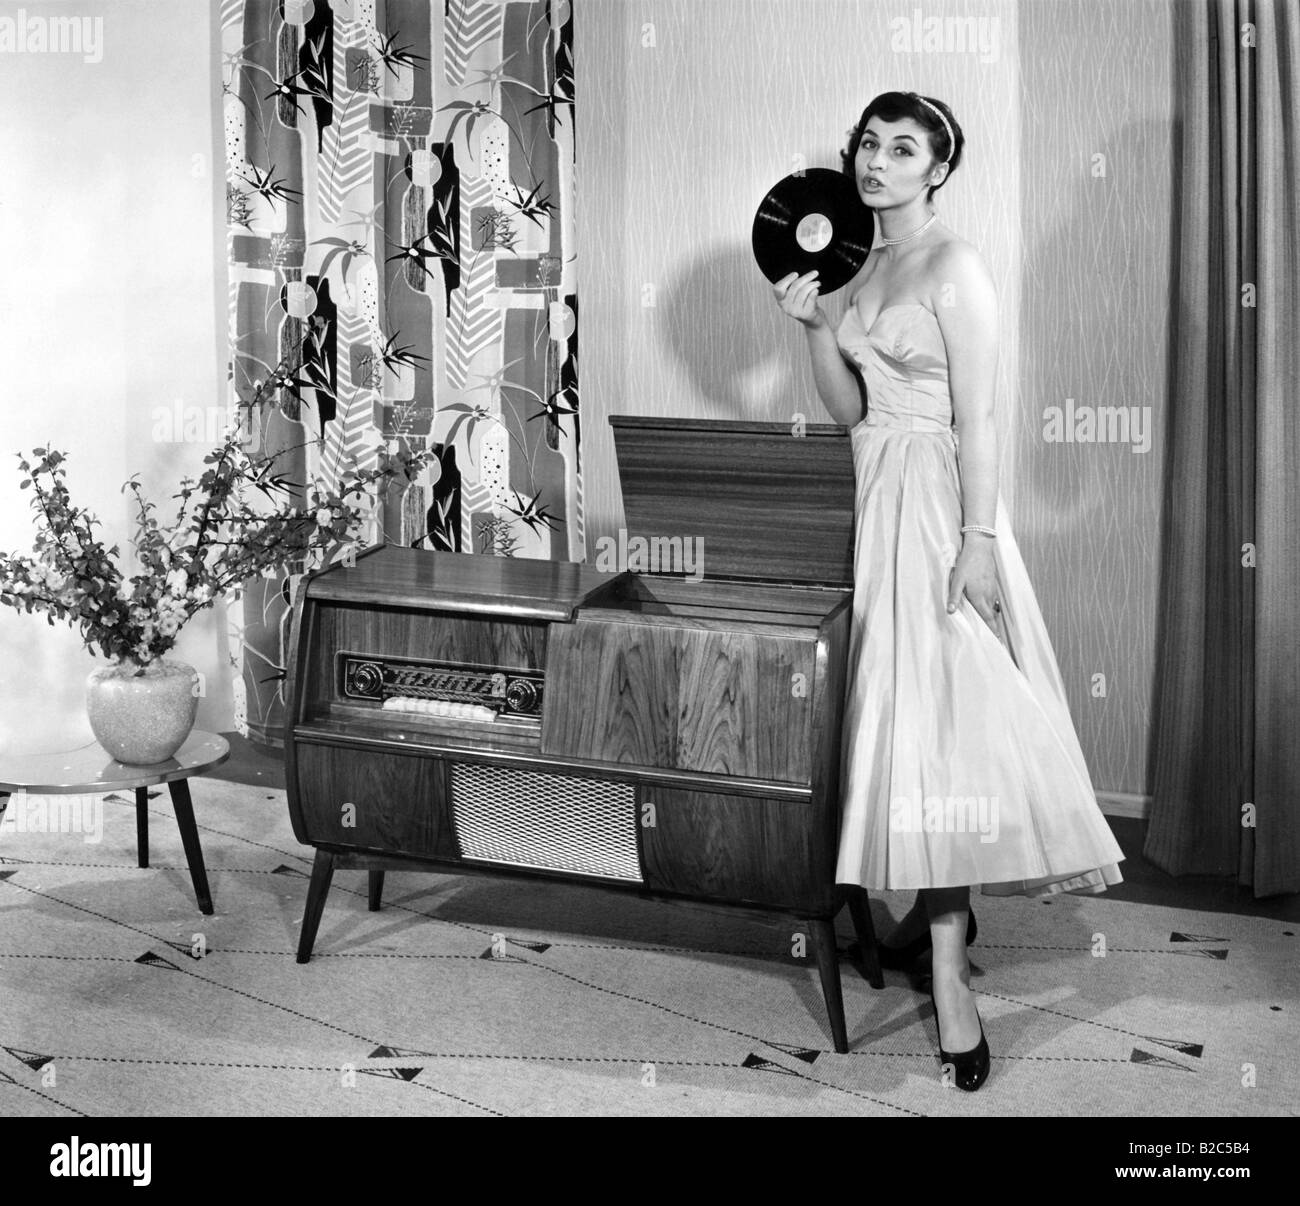 Frau posiert neben einem Plattenspieler, historische Bild von ca. 1955 Stockfoto